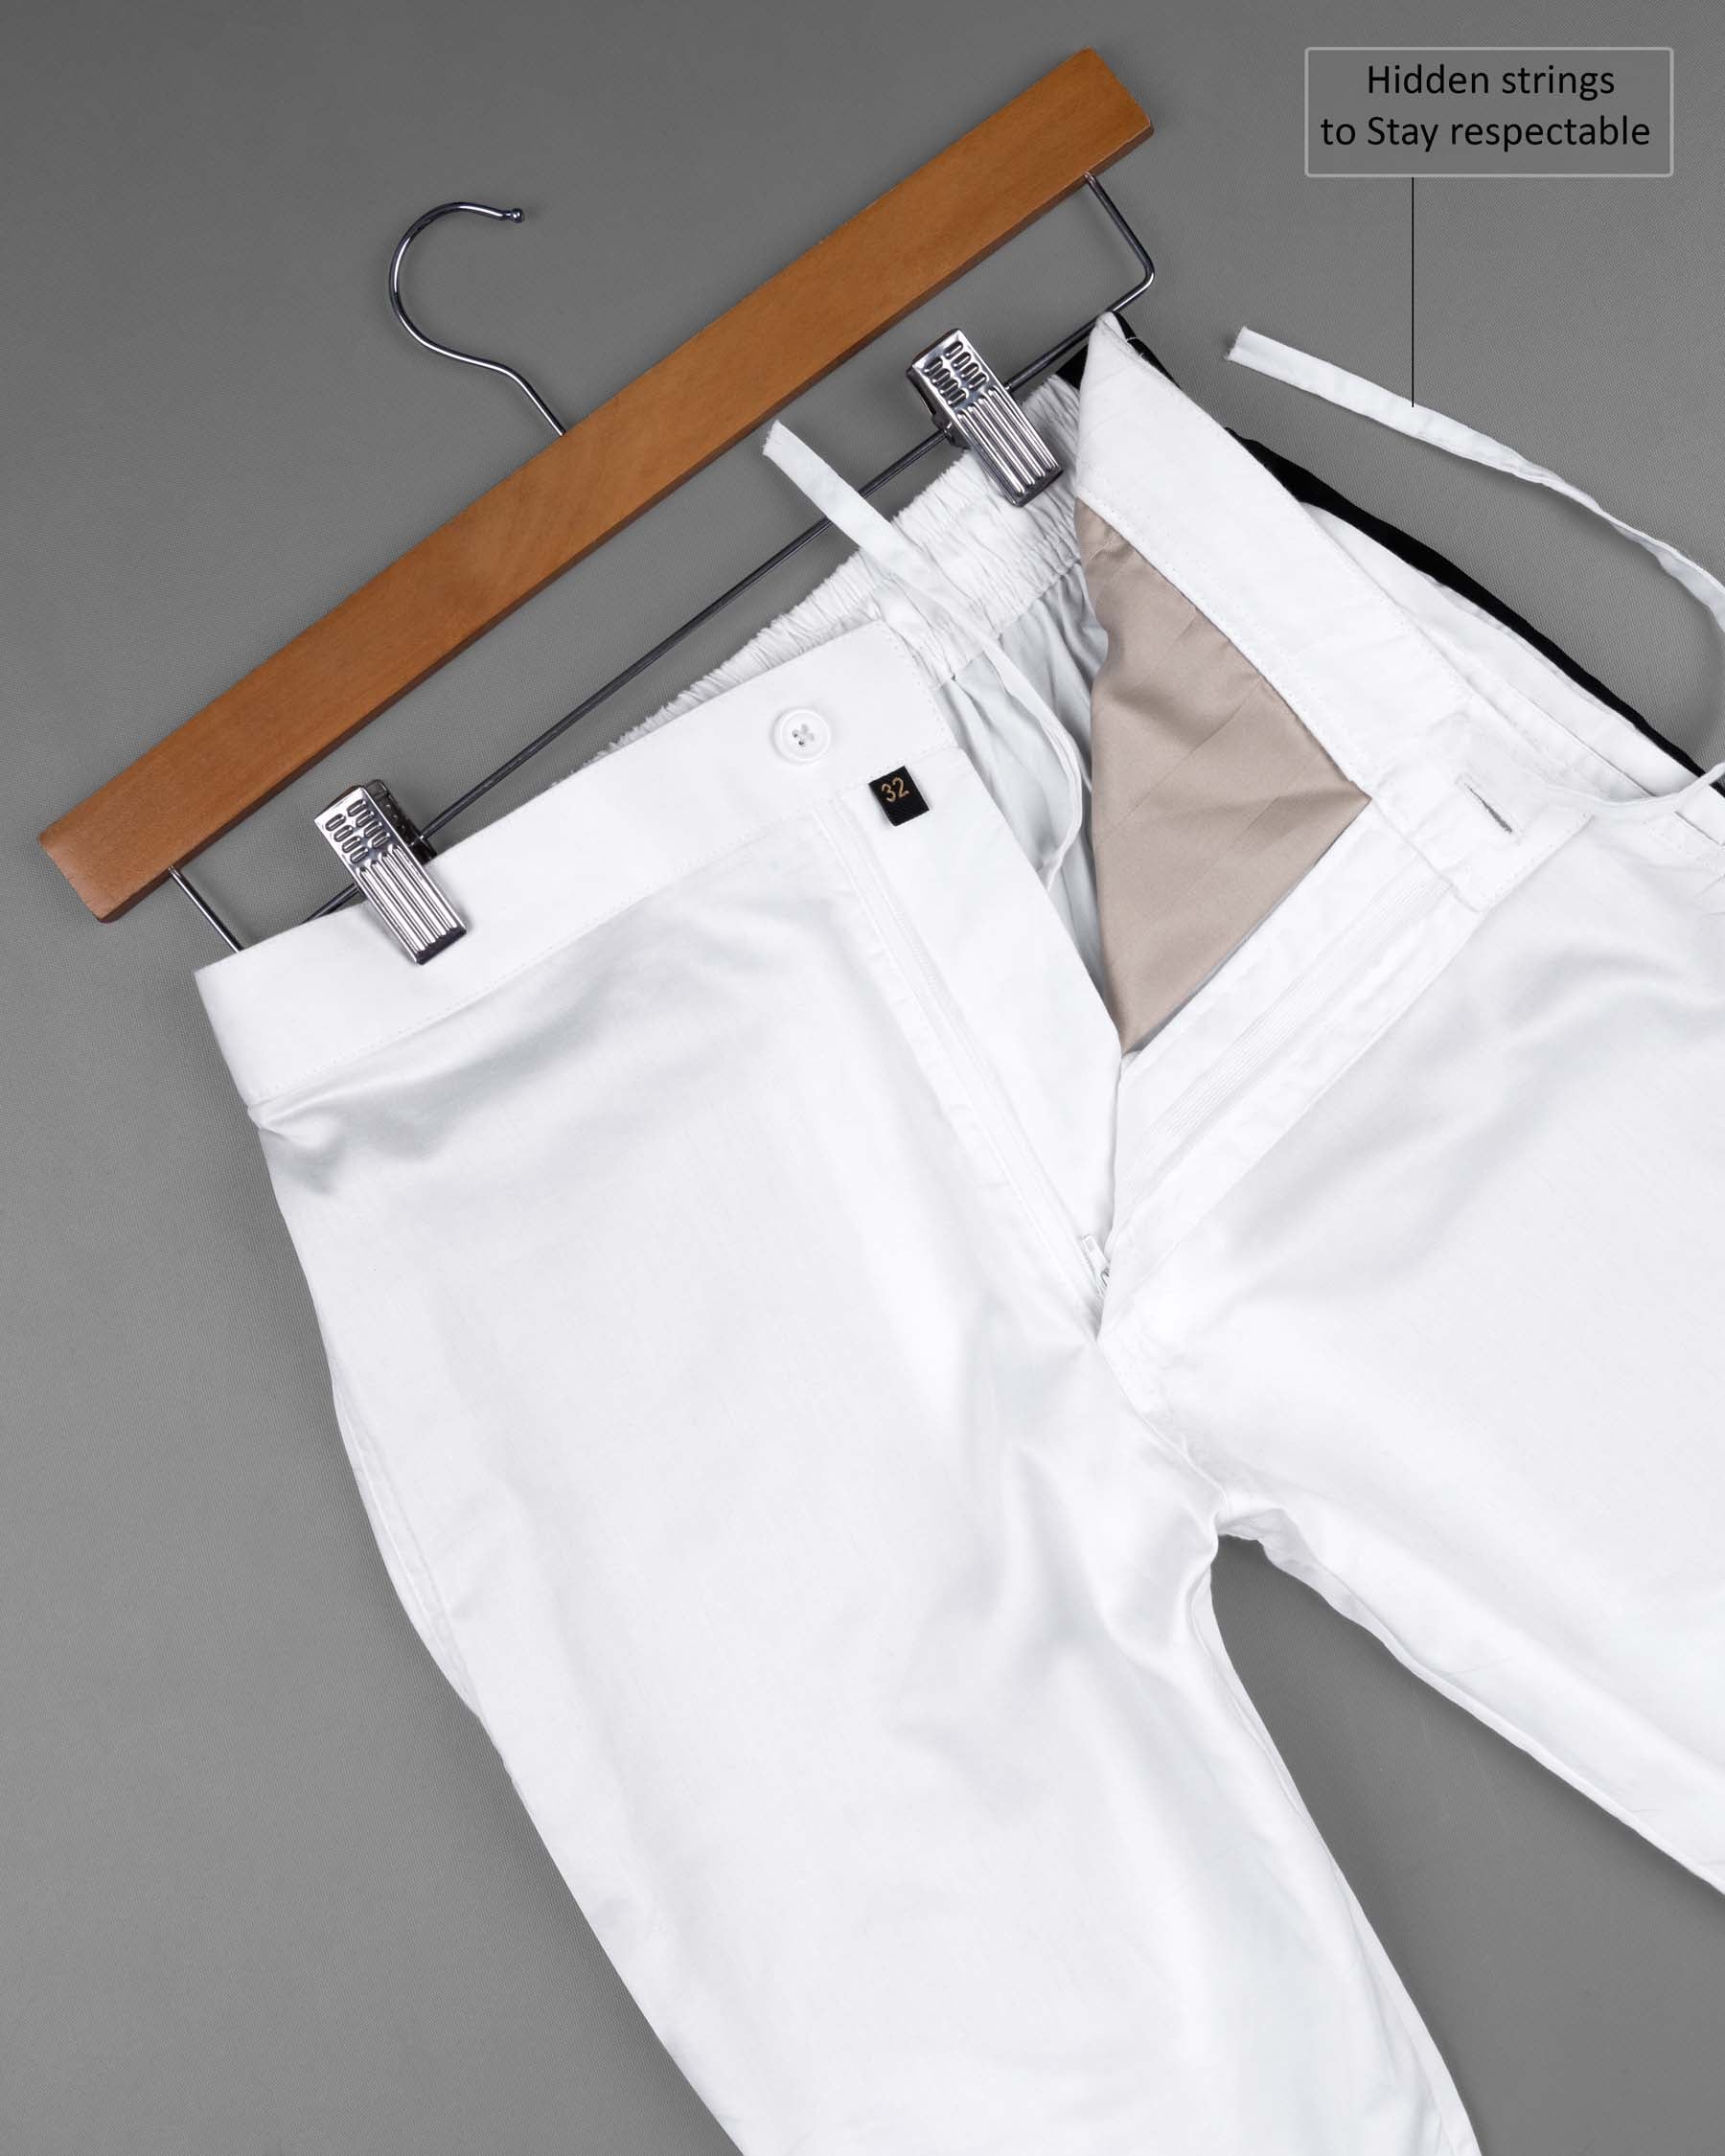 Should men ever wear white pants? - Quora